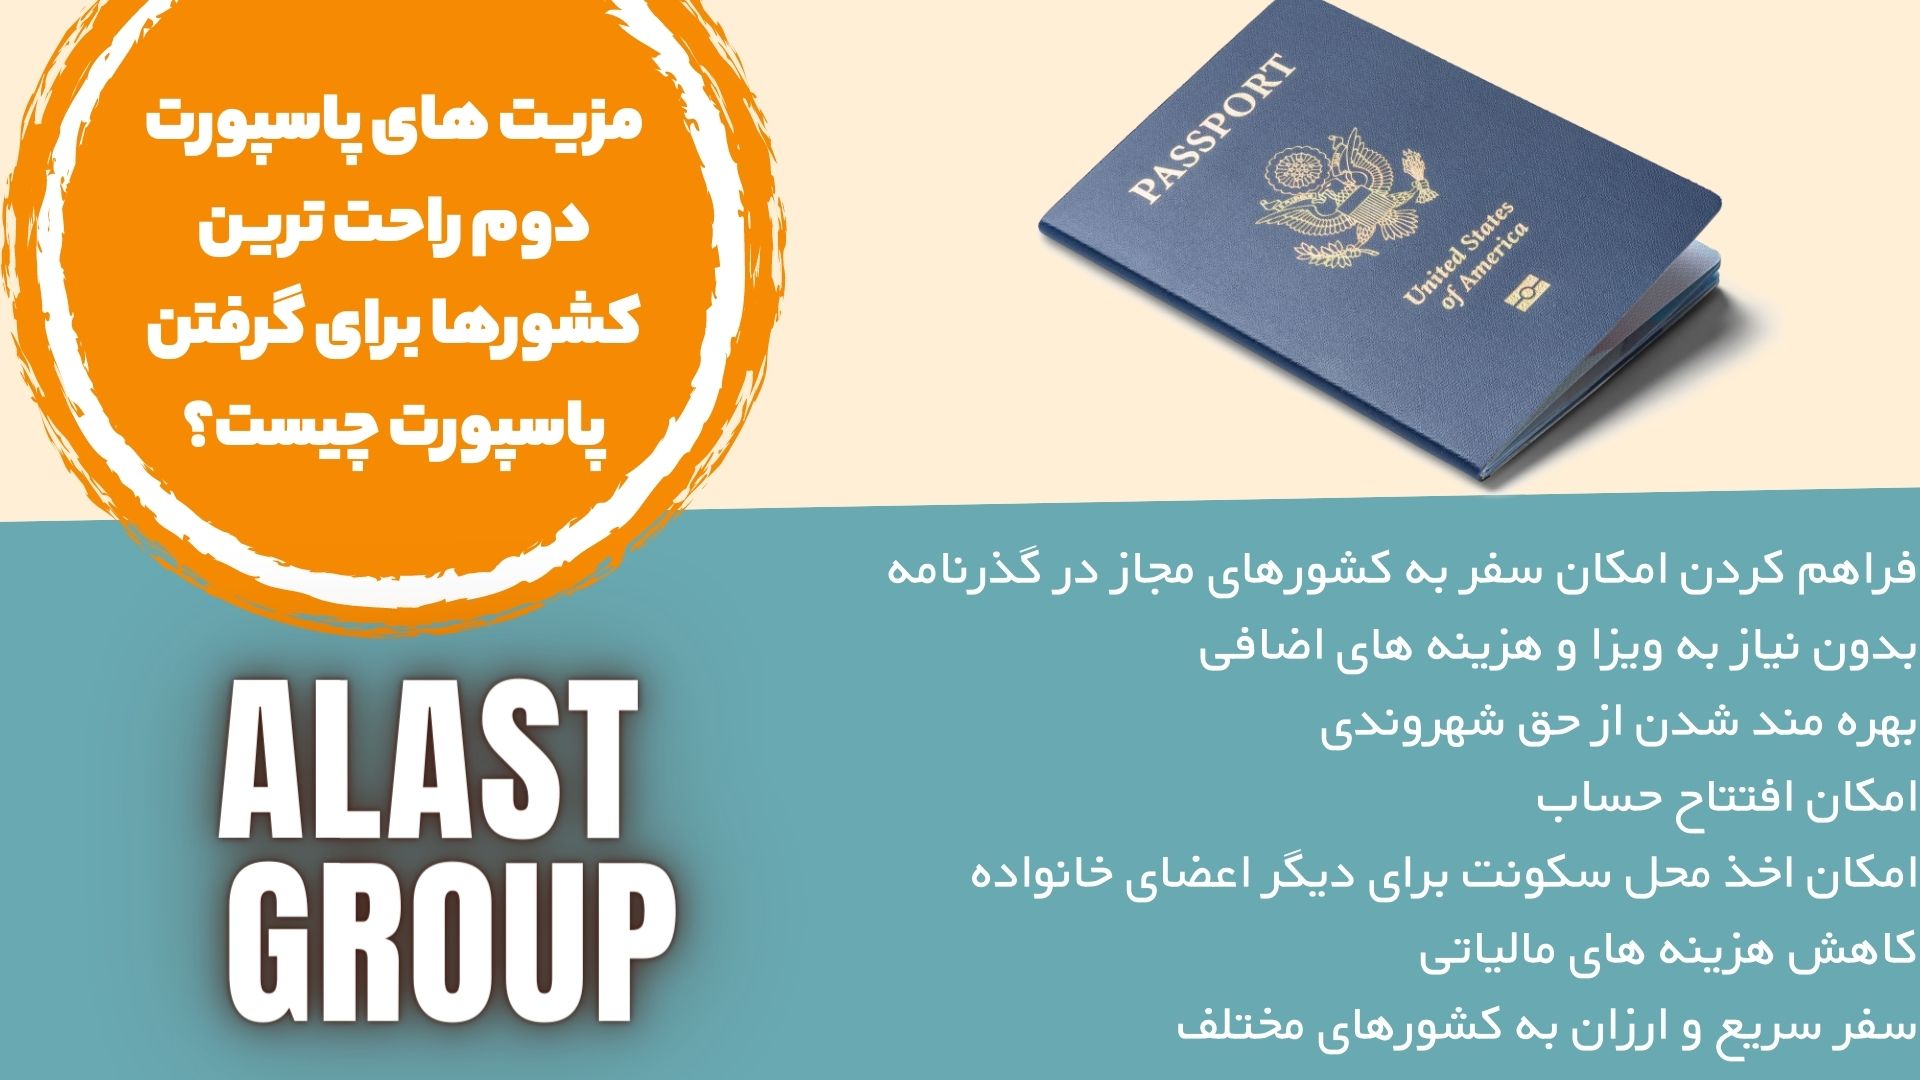 مزیت های پاسپورت دوم راحت ترین کشورها برای گرفتن پاسپورت چیست؟